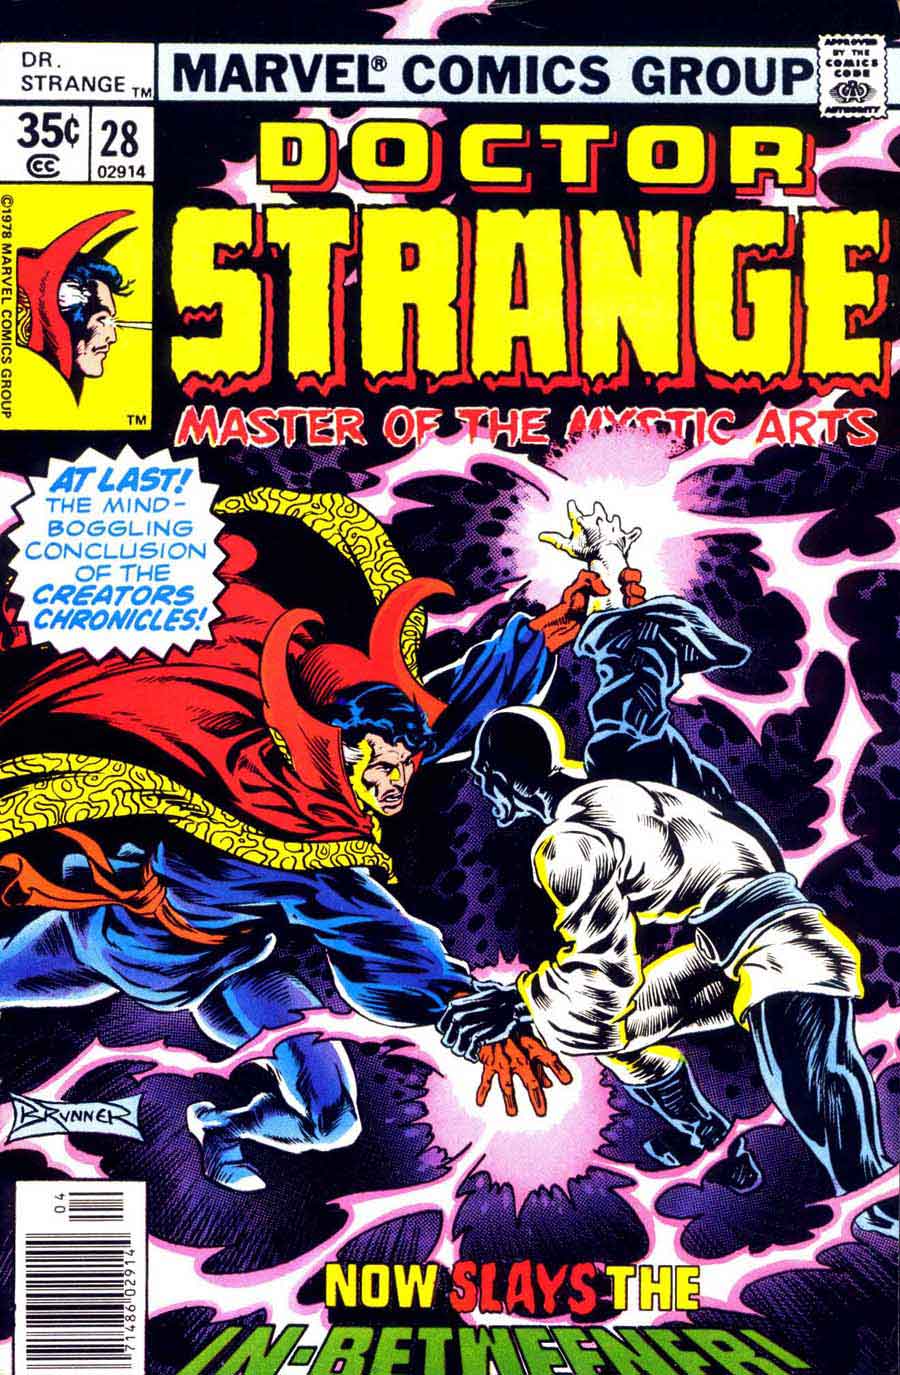 Frank Brunner  bronze age 1970s marvel comic book cover art - Doctor Strange v2 #28